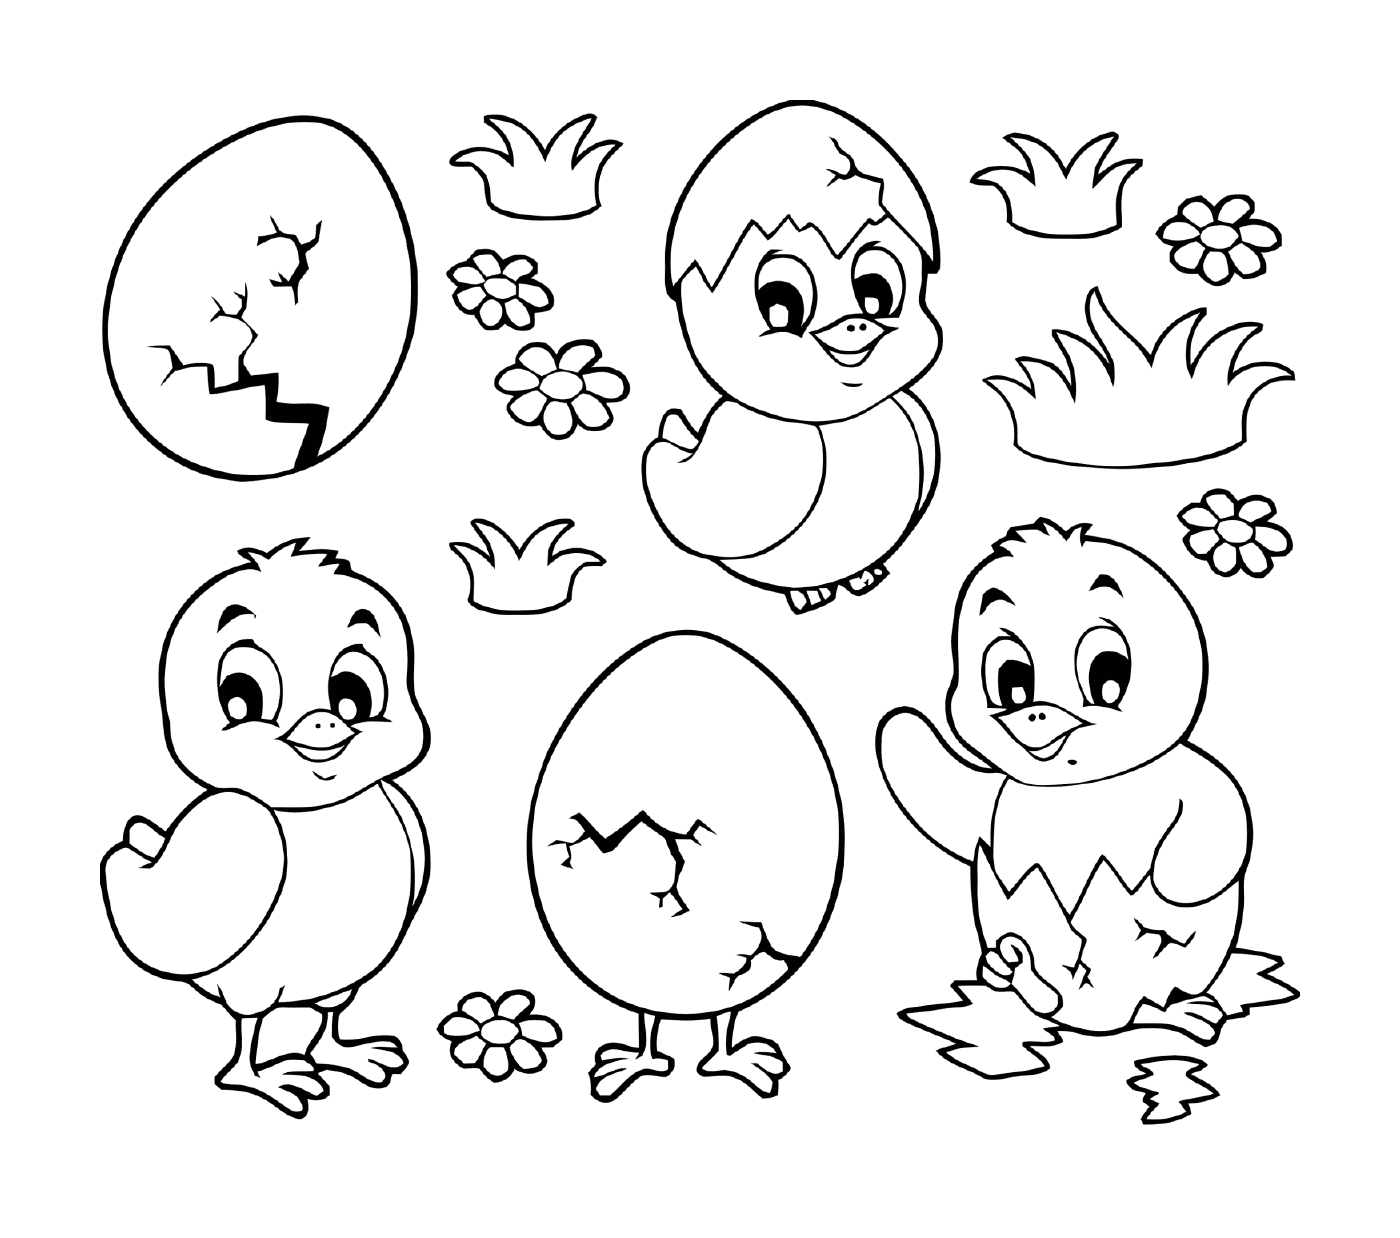  Pollitos de Pascua y huevos, lindos diseños en blanco y negro 